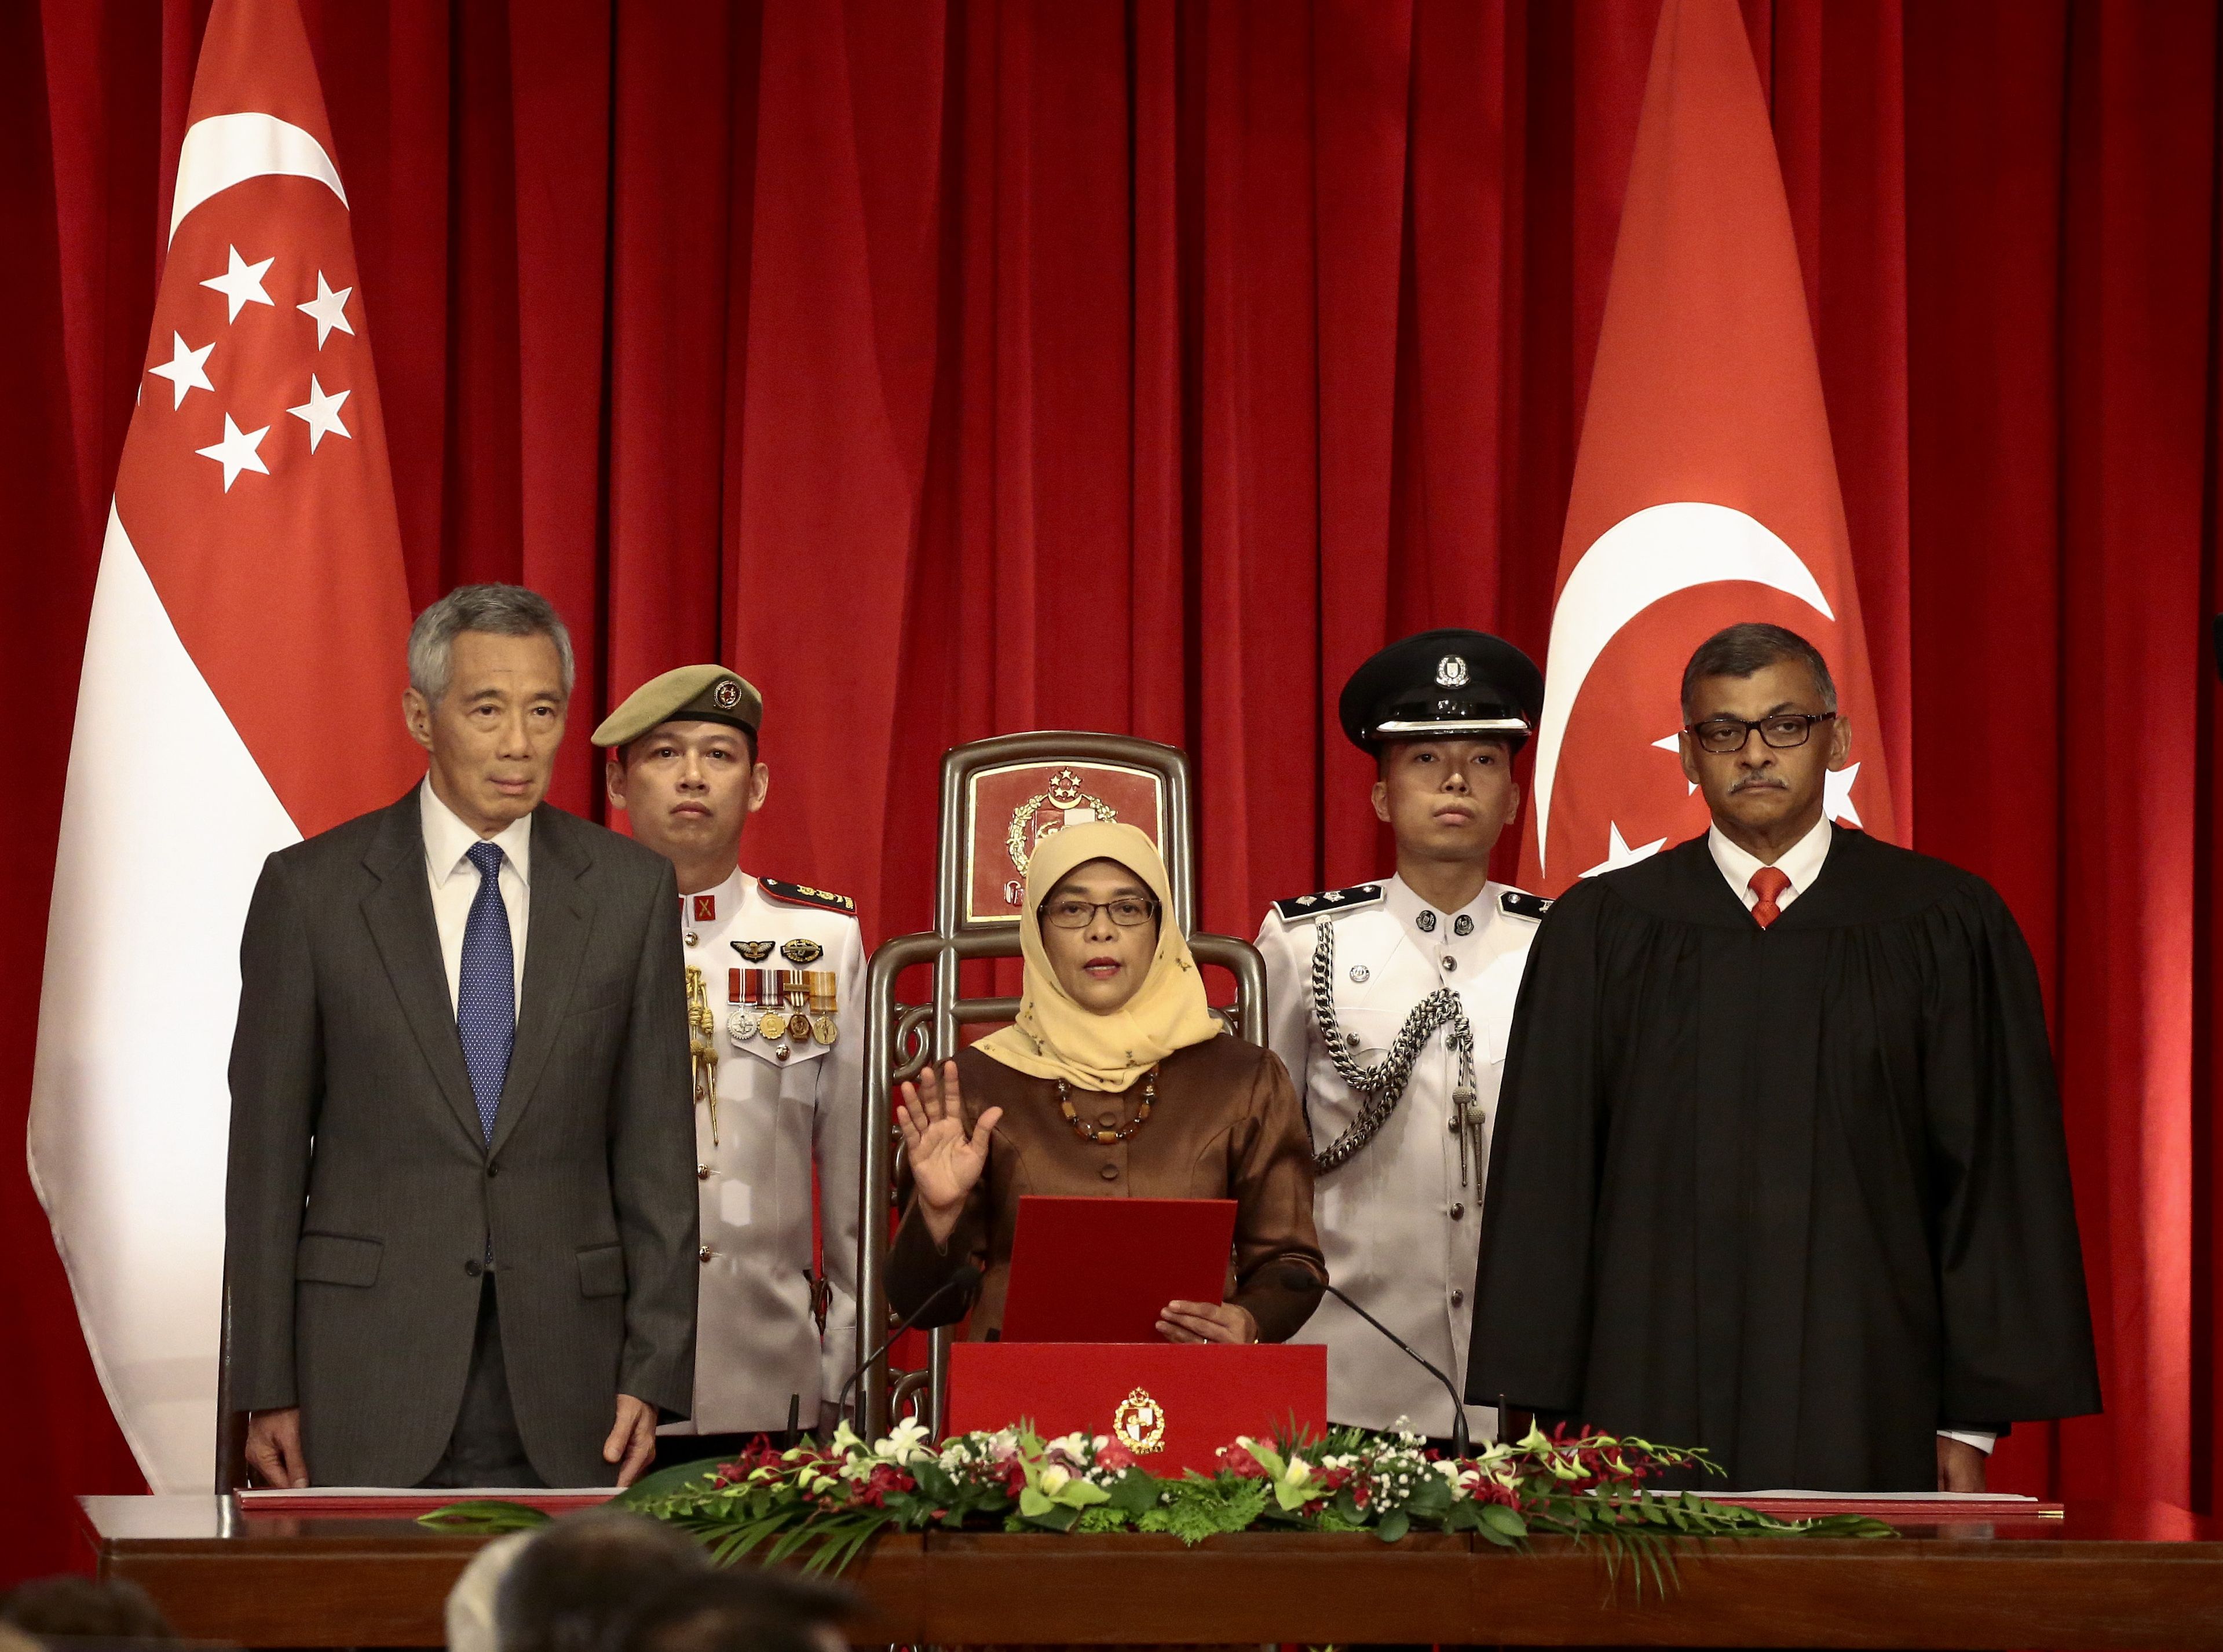 مراسم تنصيب أول امرأة مسلمة لرئاسة سنغافورة